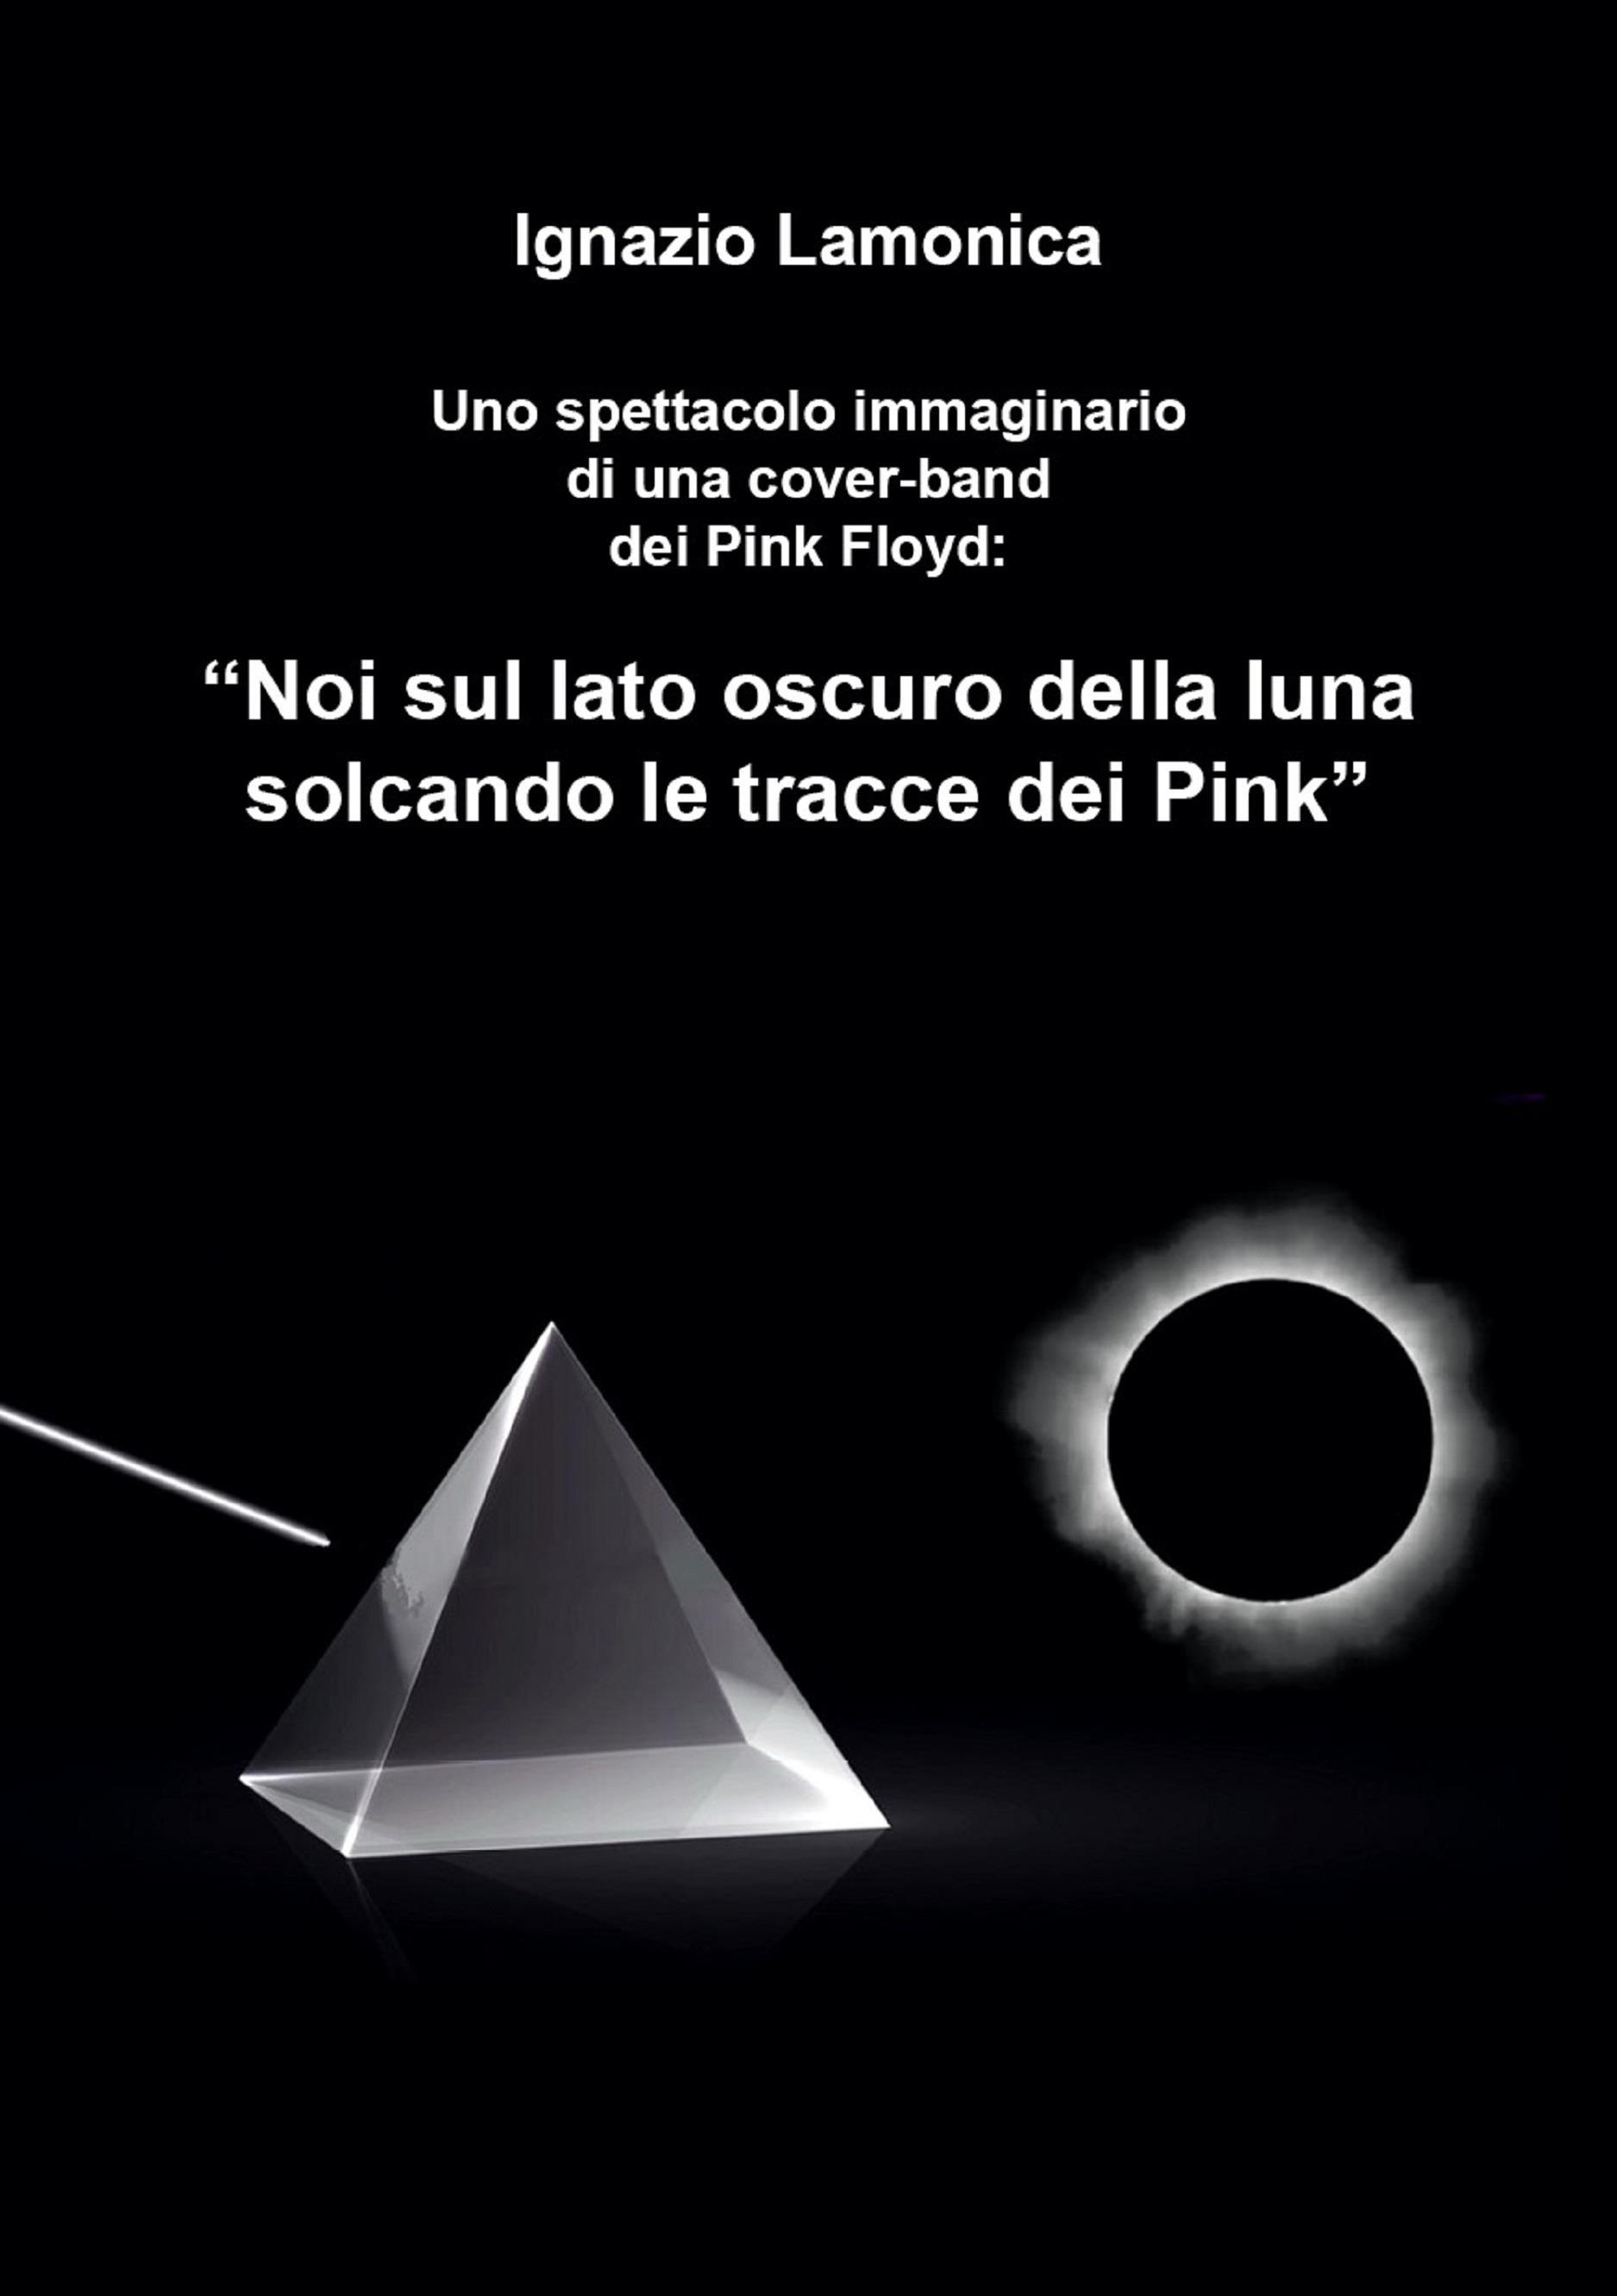 “Noi sul lato oscuro della luna solcando le tracce dei Pink”